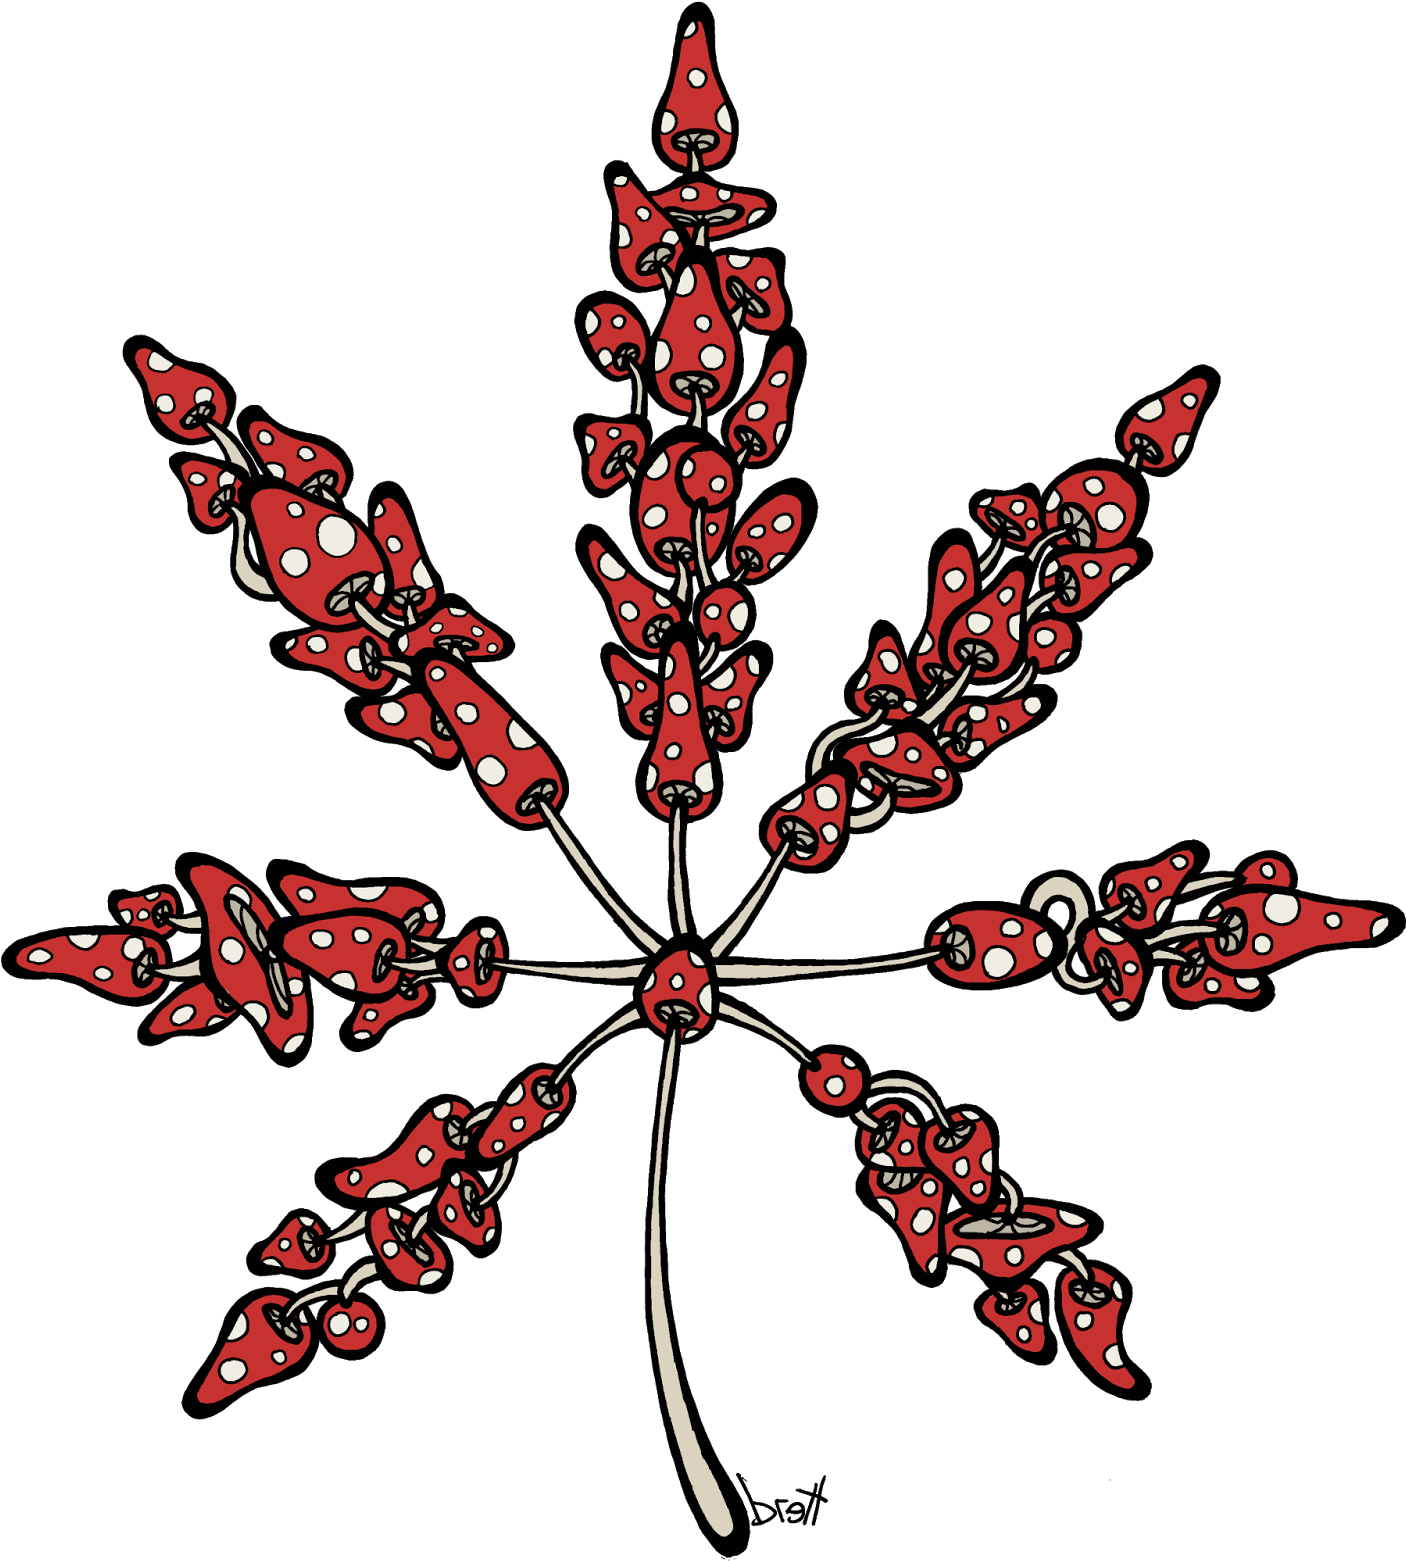 Marijuana Leaf Made Of Mushrooms - Cannabis (1429x1600)